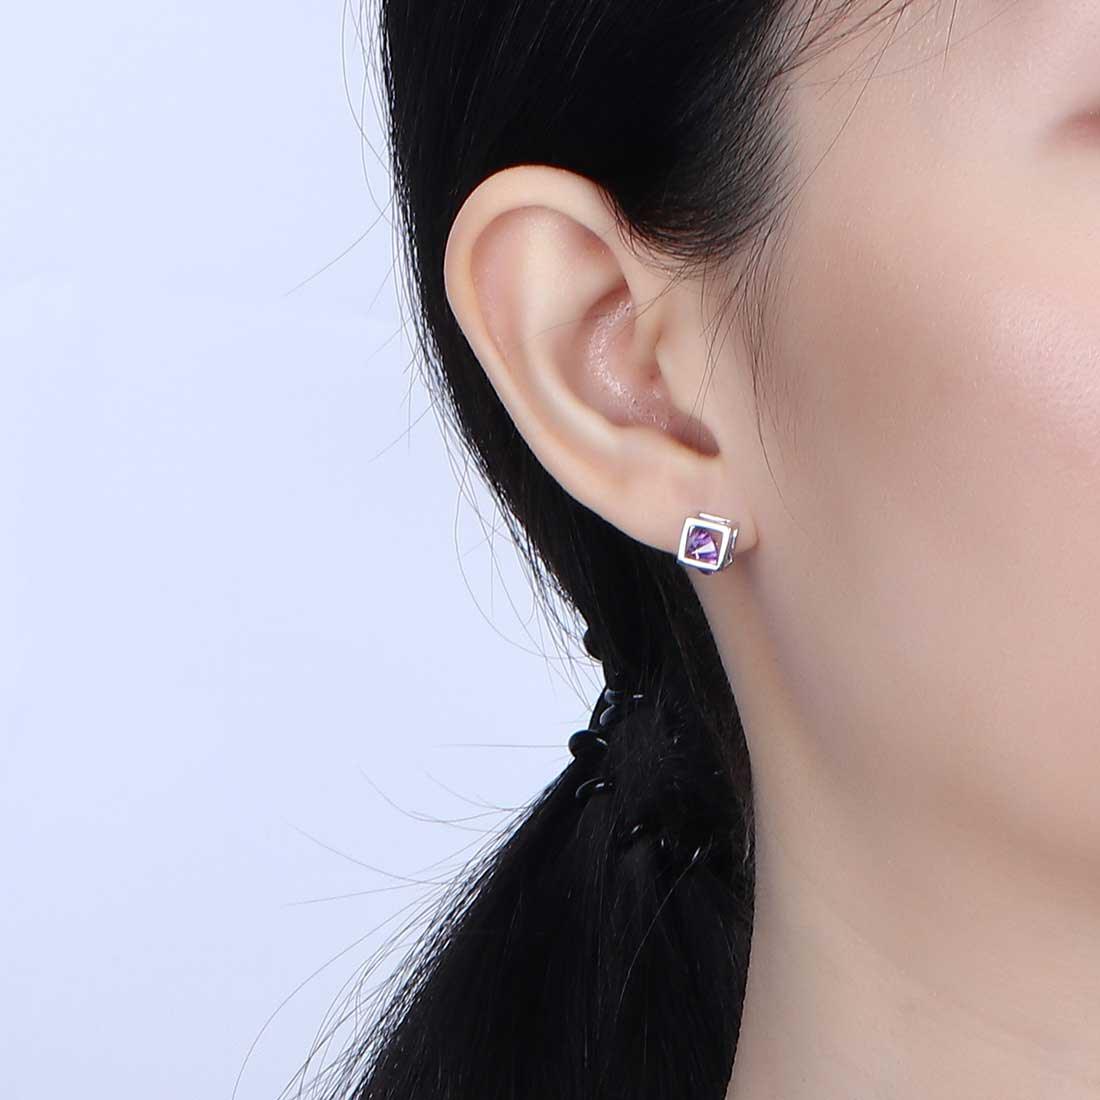 3D Cube Birthstone February Amethyst Earrings Sterling Silver - Earrings - Aurora Tears